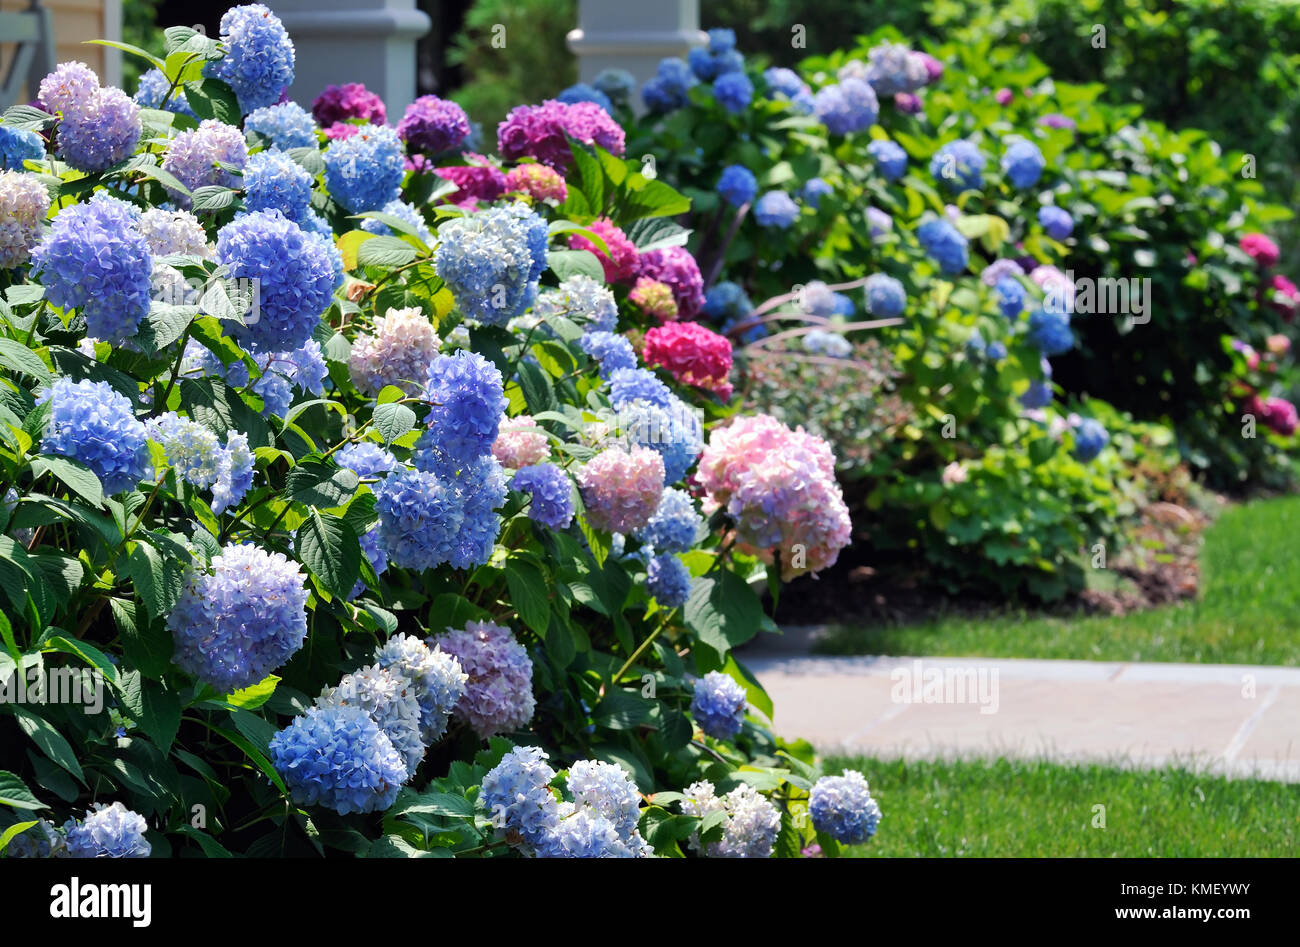 Farbenfrohe Hortensien framing Hauseingang. masse Anpflanzung von Blau, Rosa, hell und dunkel lila Blüten im Ziergarten. Stockfoto